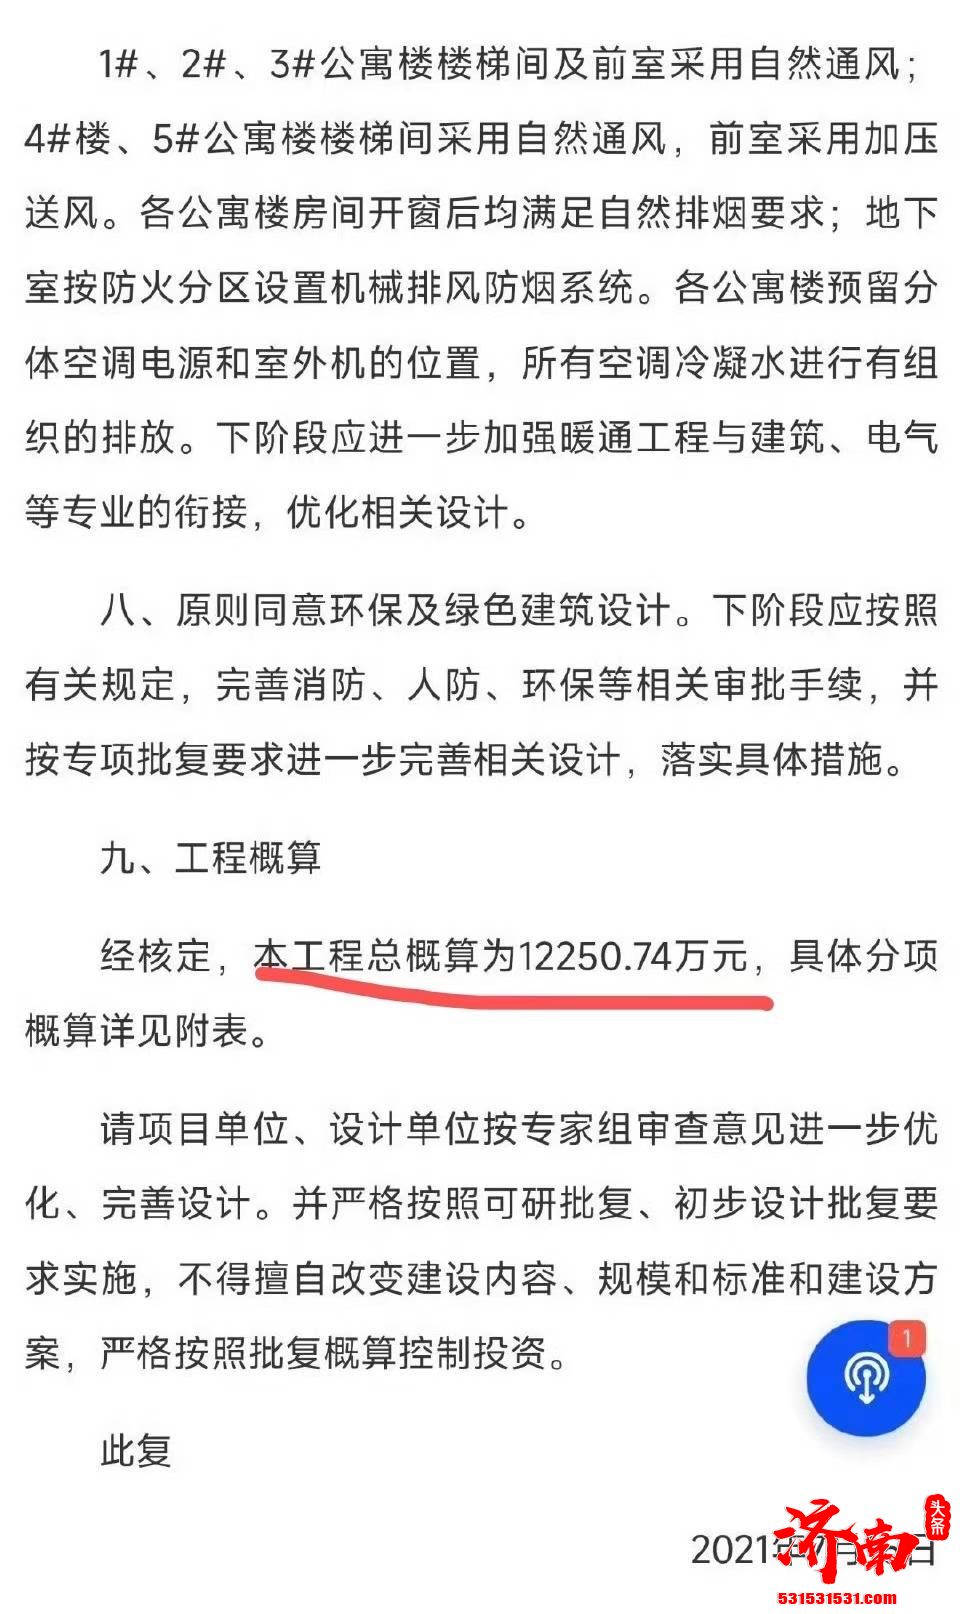 “南昌航空大学斥资1.4亿为留学生修建新宿舍”引发热议